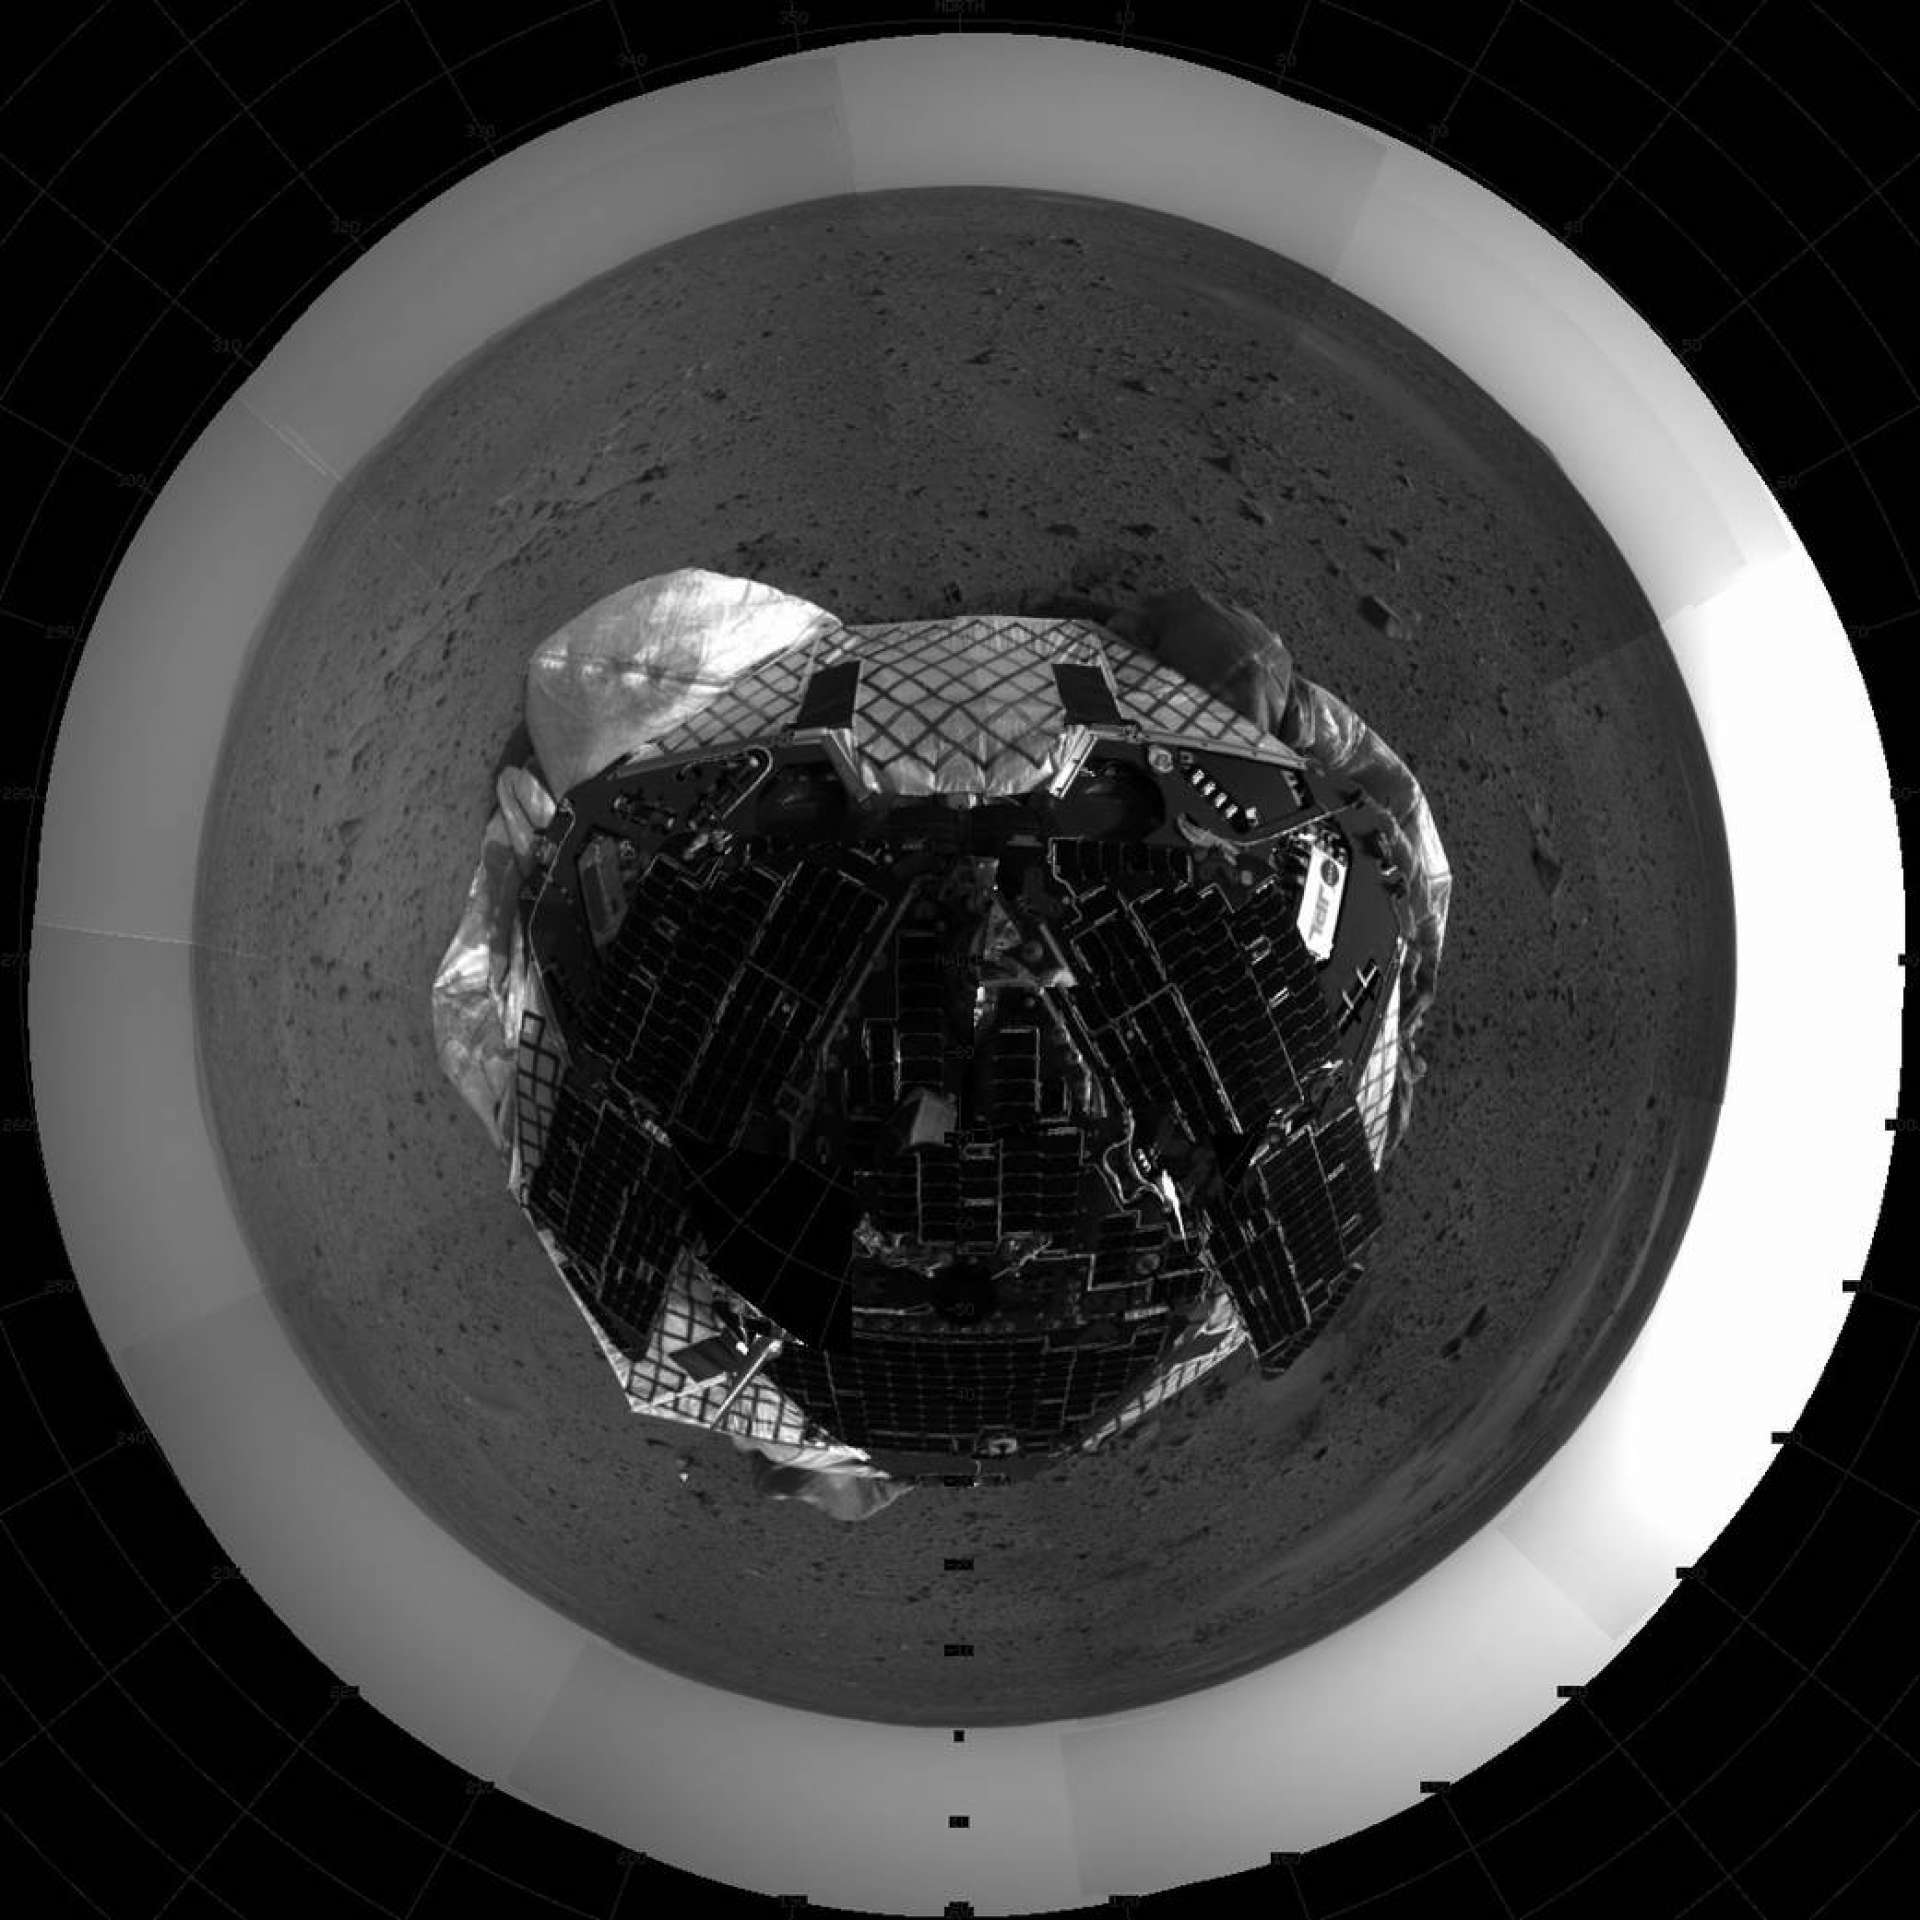 Vista superior do "Espírito de Marte". Esta imagem em mosaico tirada pela câmera de navegação no Mars Exploration Rover Spirit representa uma visão aérea do rover na superfície de Marte. A frente do veículo espacial está levantada e airbags retraídos são visíveis embaixo da espaçonave(Foto: NASA/JPL)